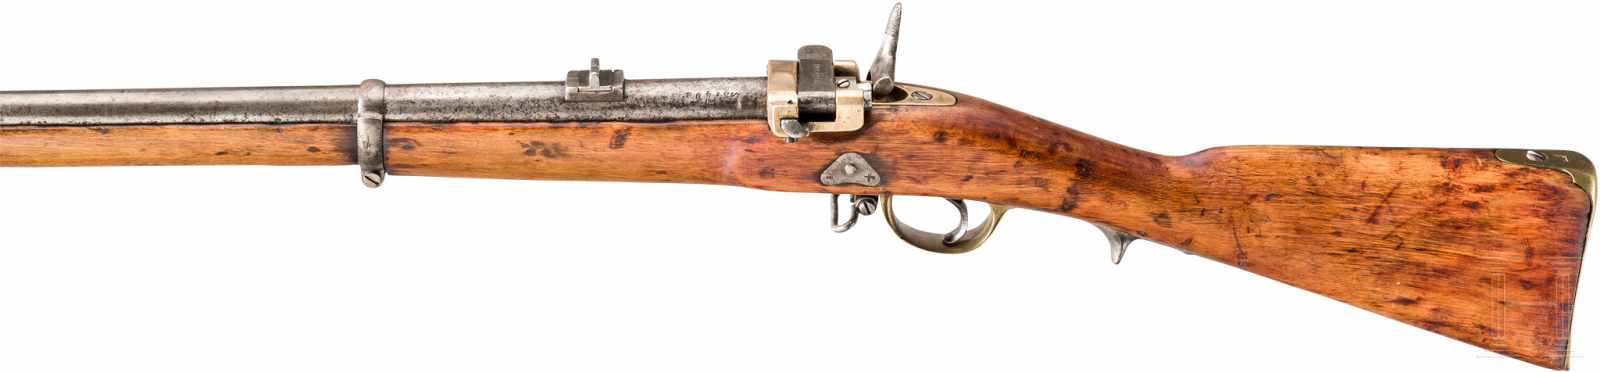 M 1857/67 Krnka Kurzgewehr IschewskKal. 15,24mm Krnka, Nr. 34408, Aptiert aus einer M 1857 - Image 2 of 2